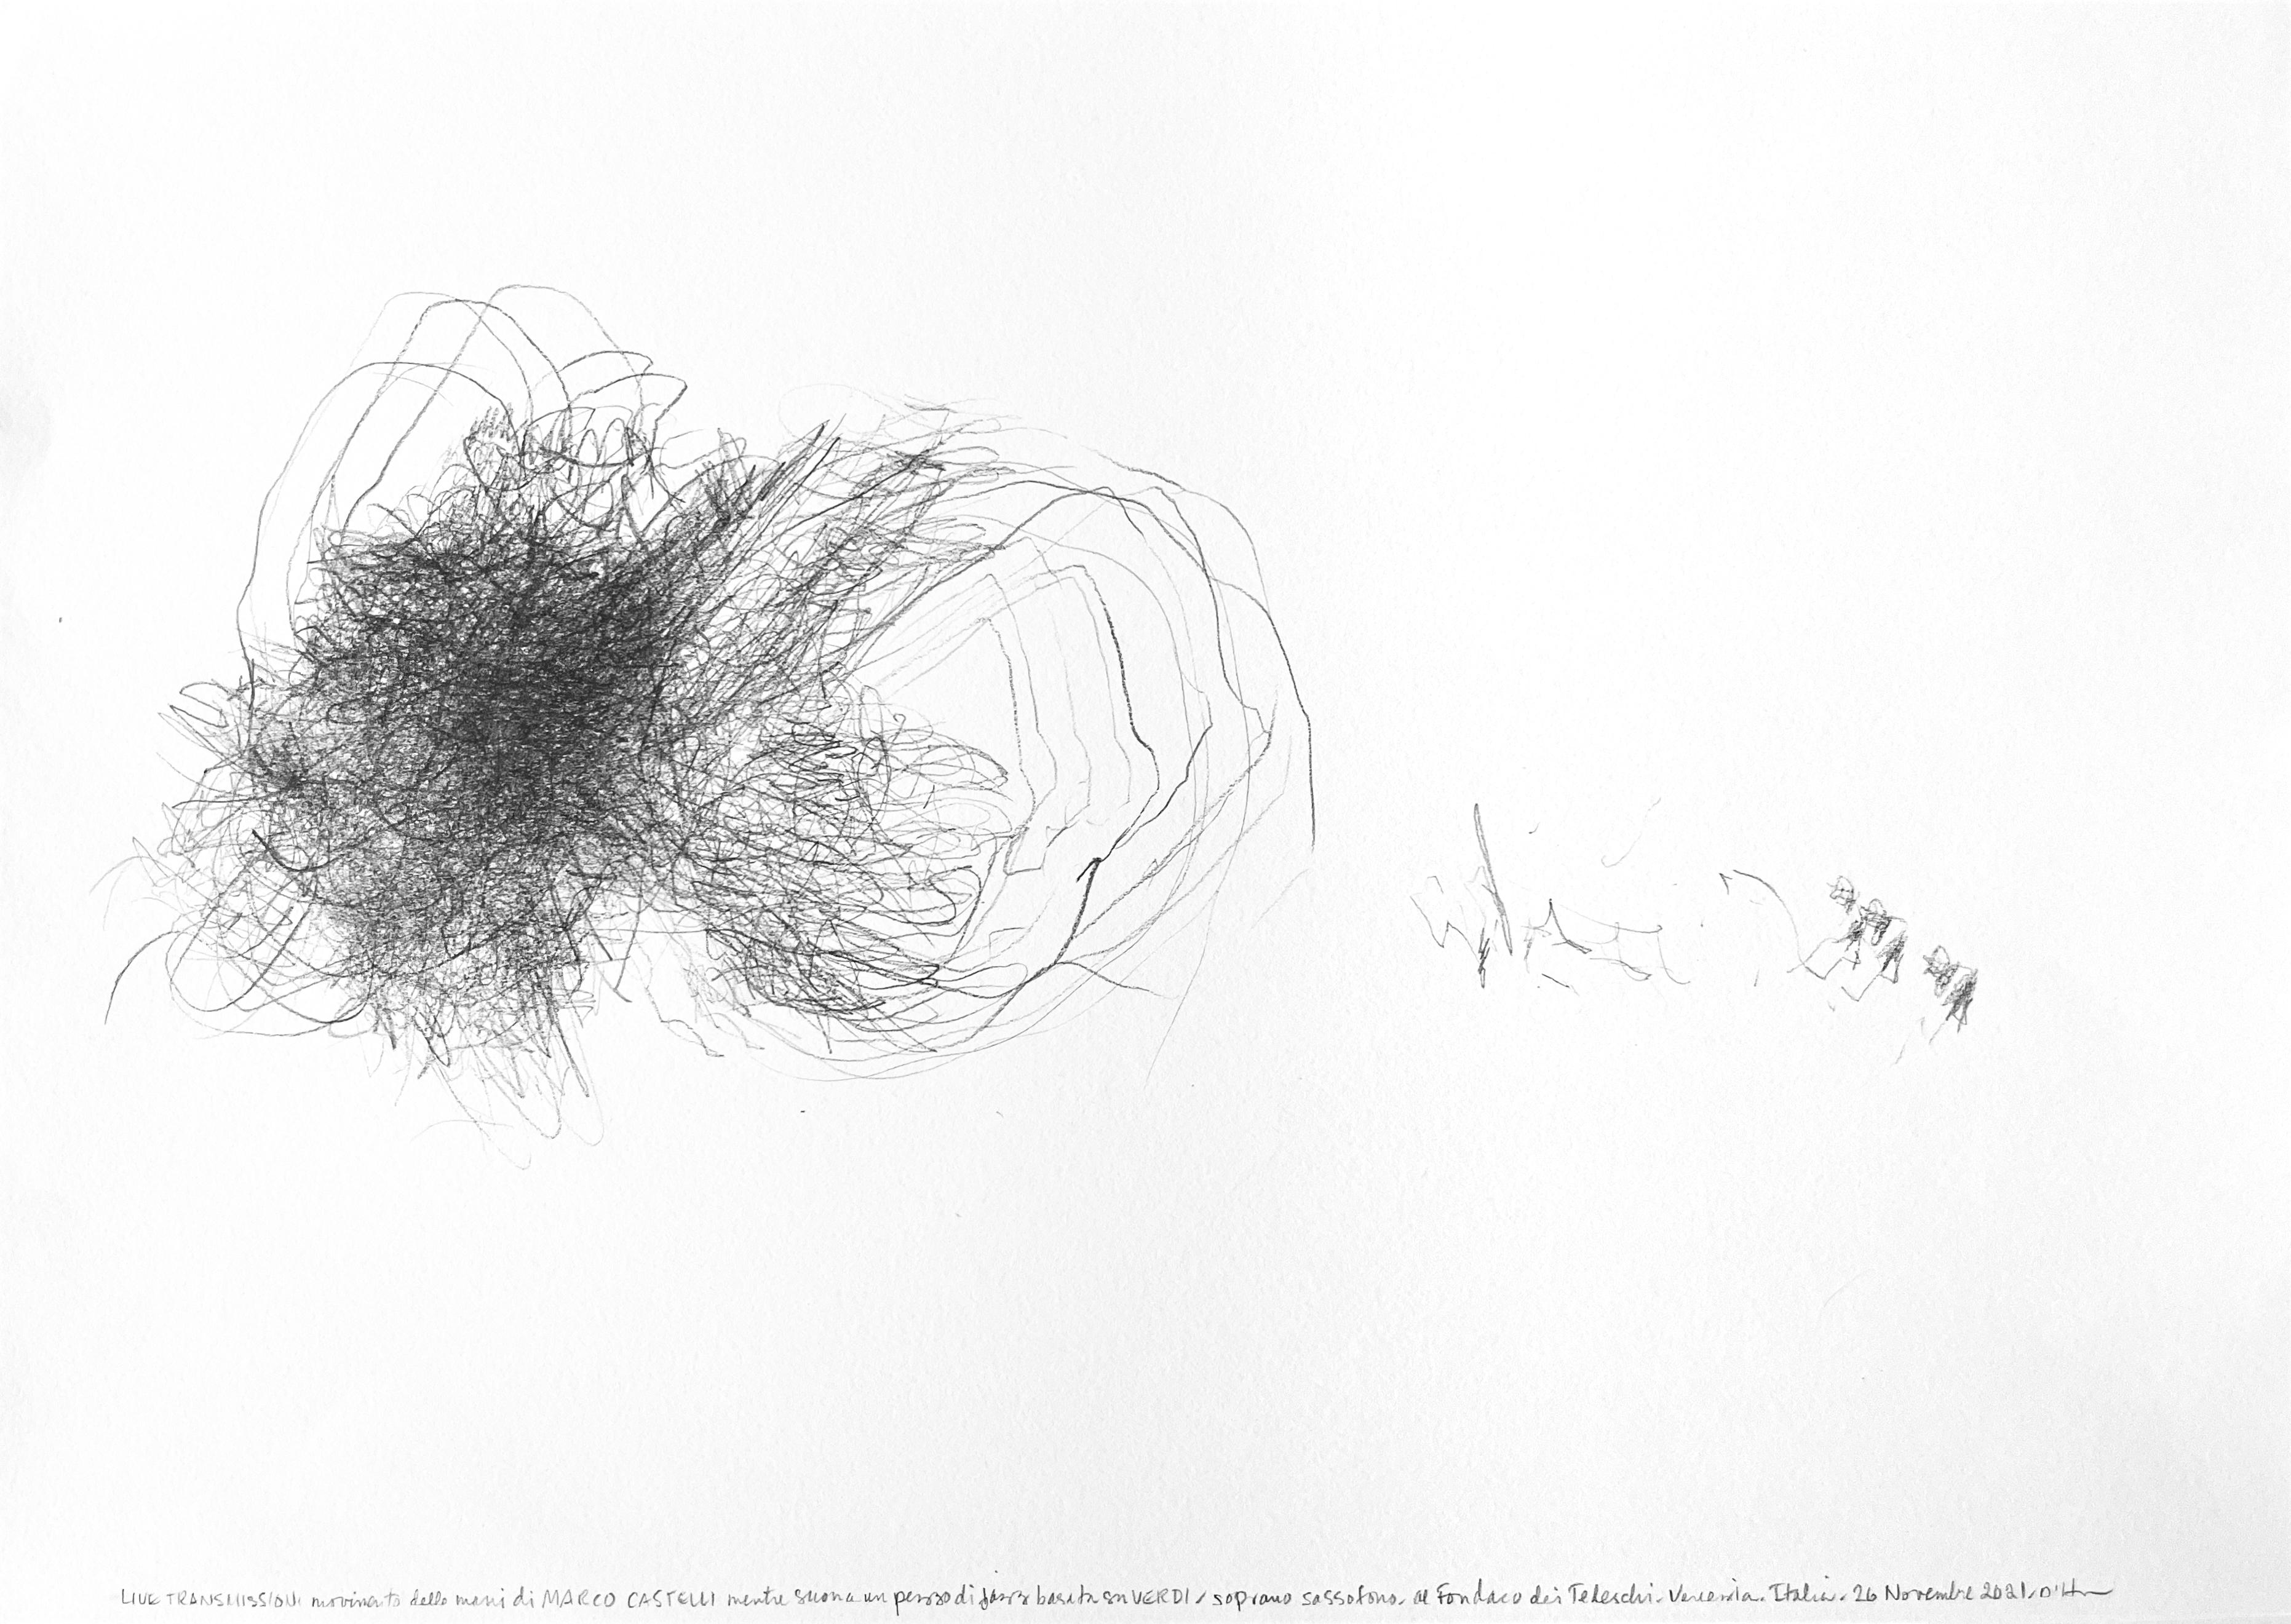 Marco Castelli Sax Venezia. 2021, graphite, paper, 30x42 cm